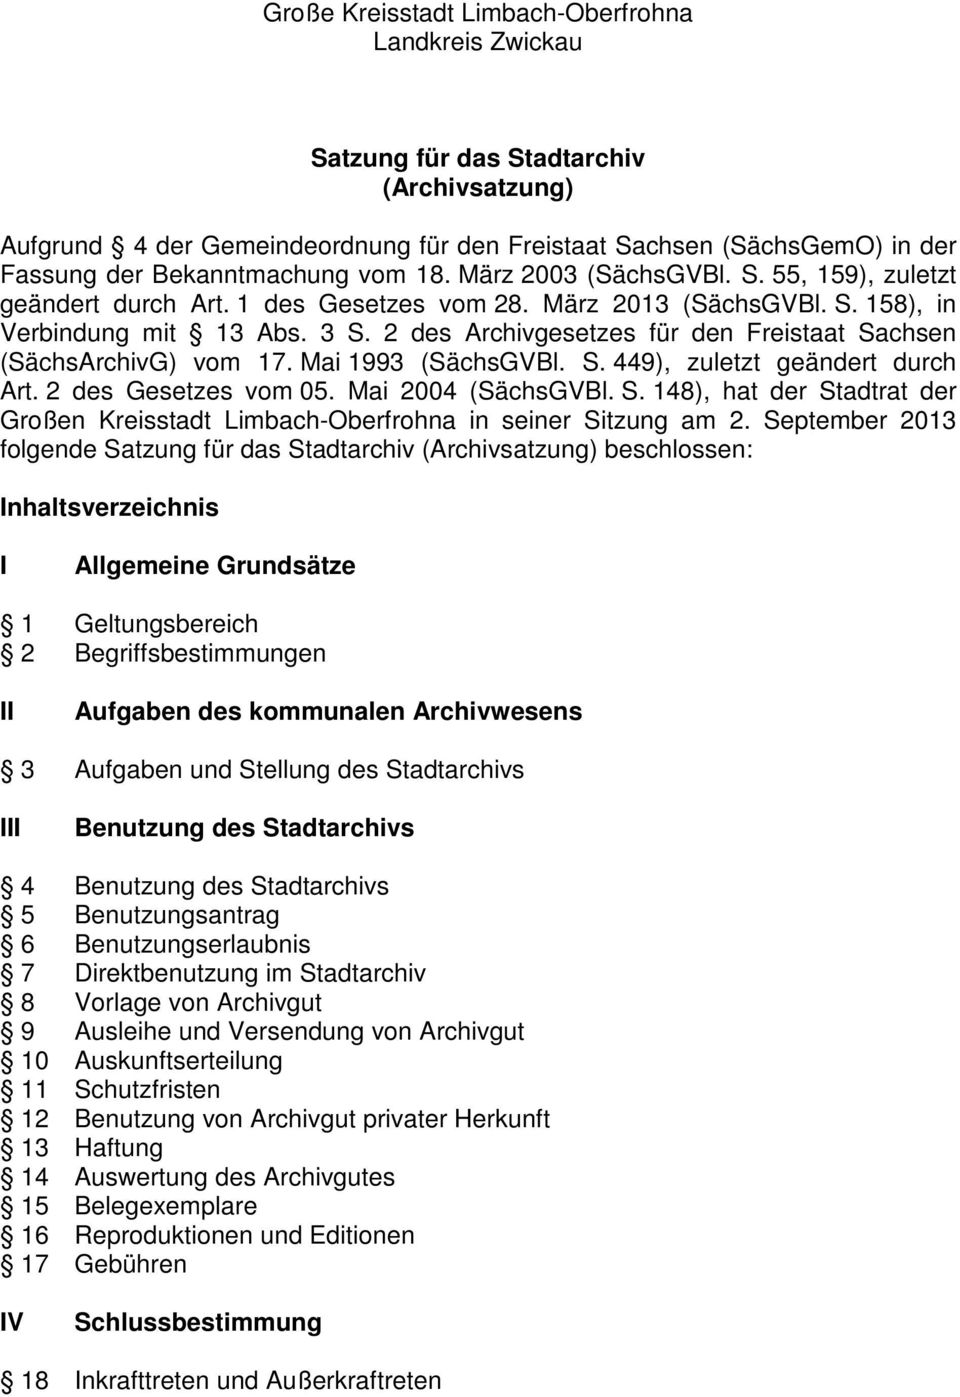 2 des Archivgesetzes für den Freistaat Sachsen (SächsArchivG) vom 17. Mai 1993 (SächsGVBl. S. 449), zuletzt geändert durch Art. 2 des Gesetzes vom 05. Mai 2004 (SächsGVBl. S. 148), hat der Stadtrat der Großen Kreisstadt Limbach-Oberfrohna in seiner Sitzung am 2.